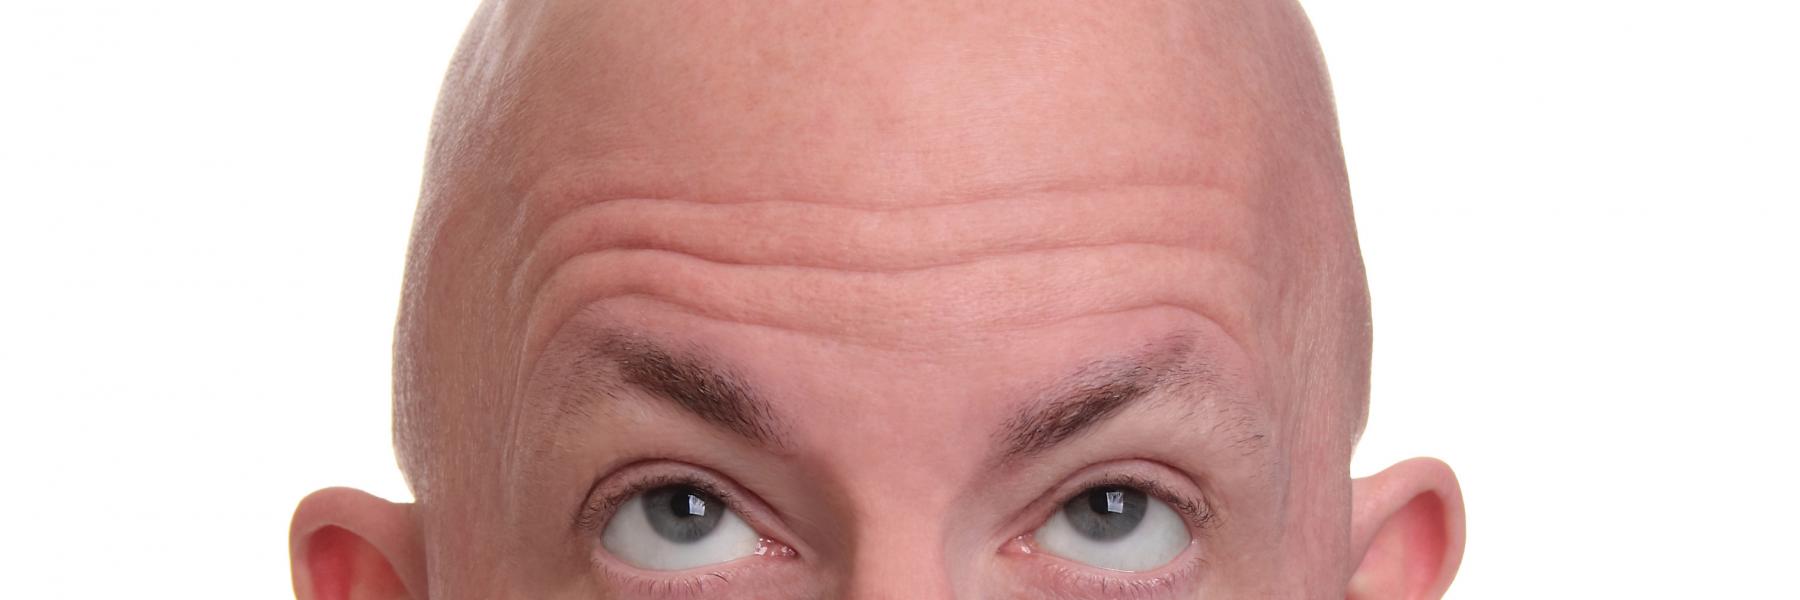 نصائح تمنع تساقط الشعر عند الرجال.. تعرف عليها